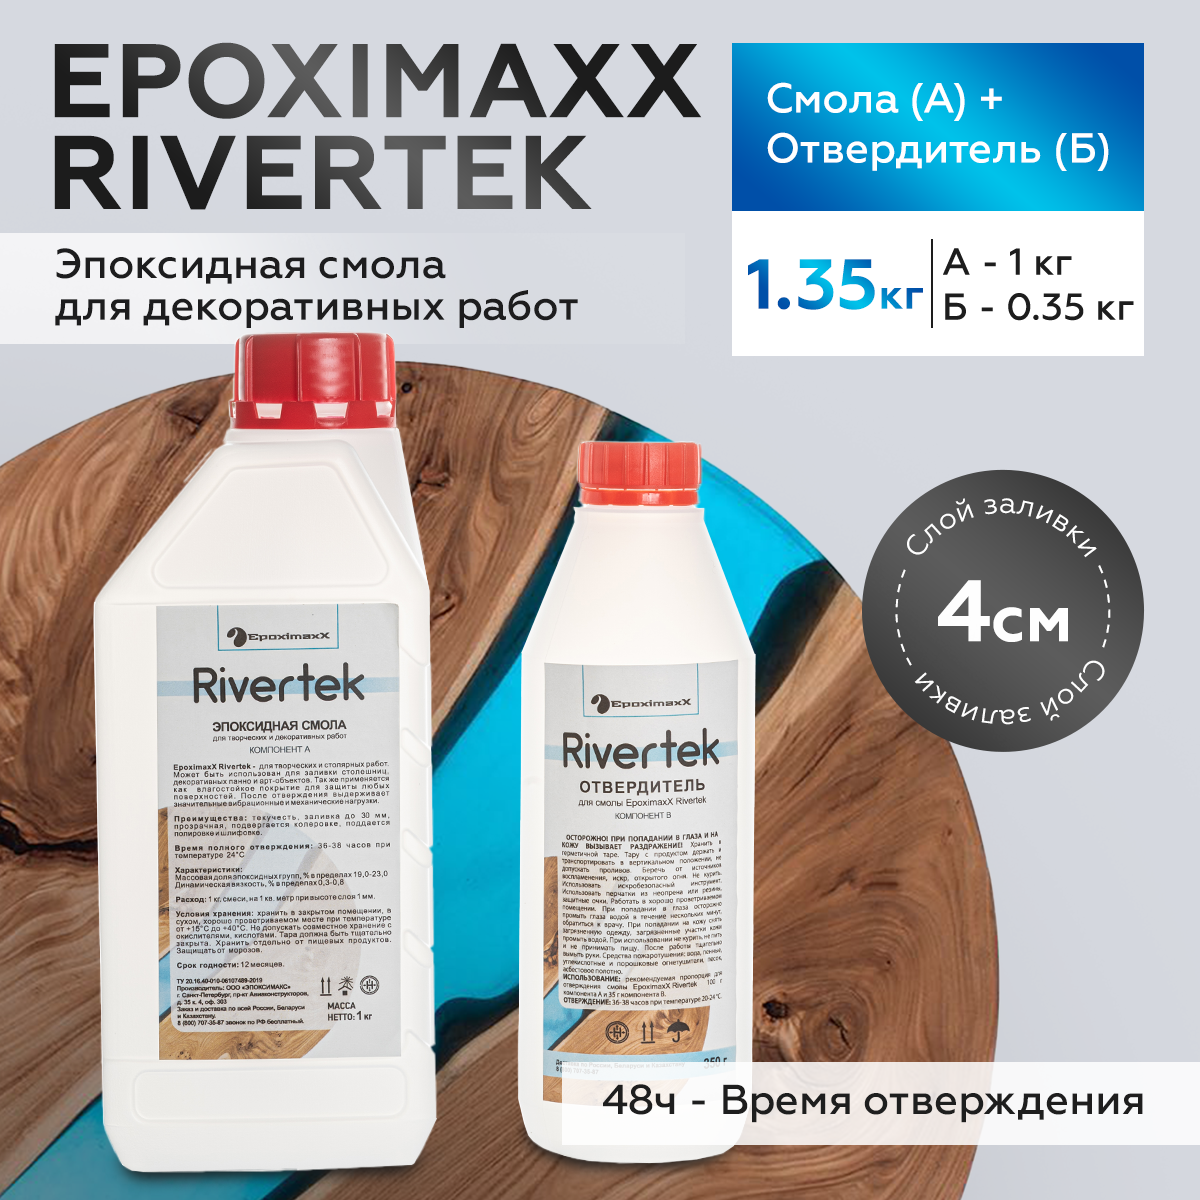 Эпоксидная смола для заливки, столешниц и творчества Epoximaxx RIVERTEK, 1,35 кг